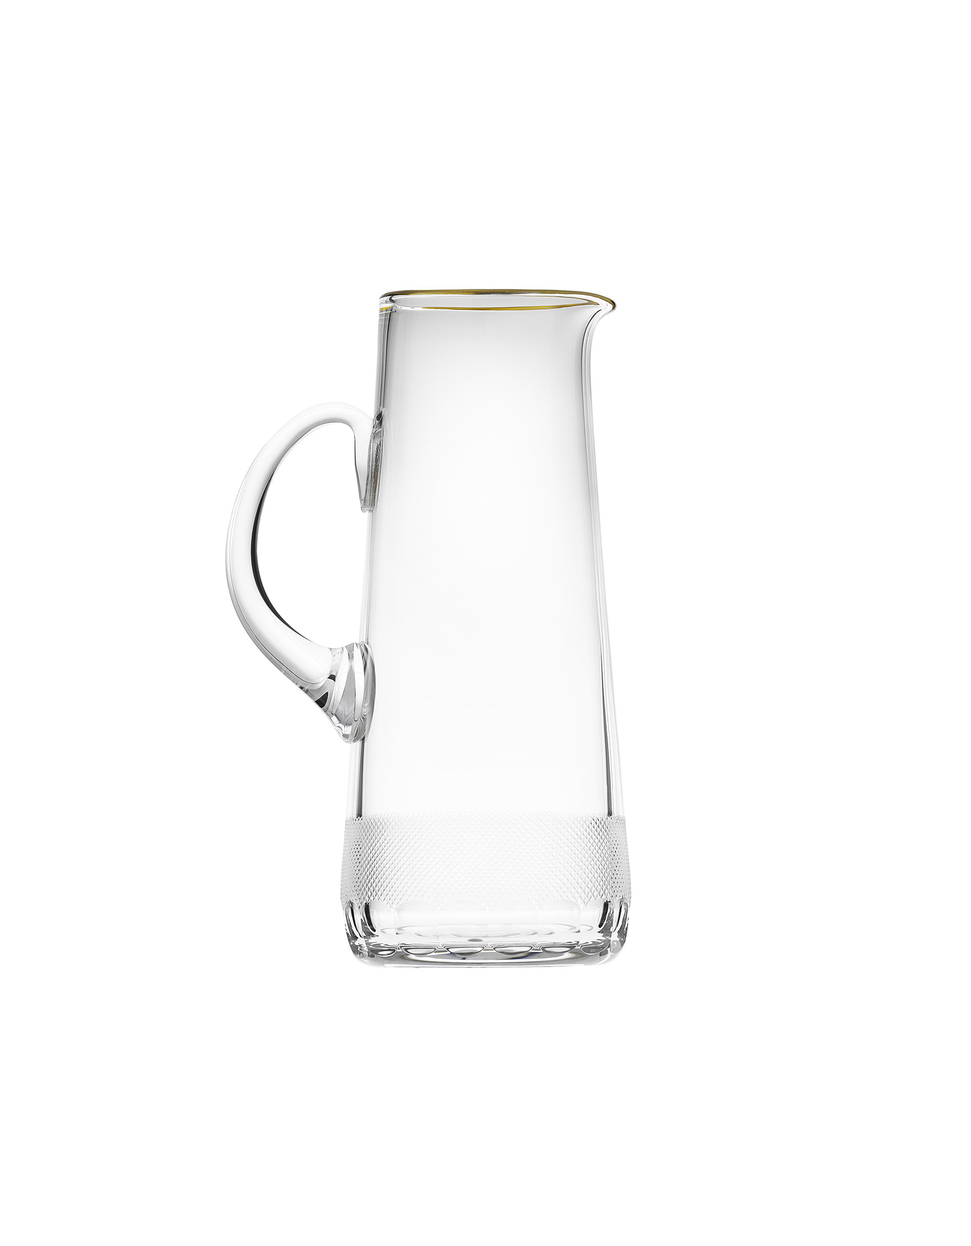 Royal water jug, 1,500 ml